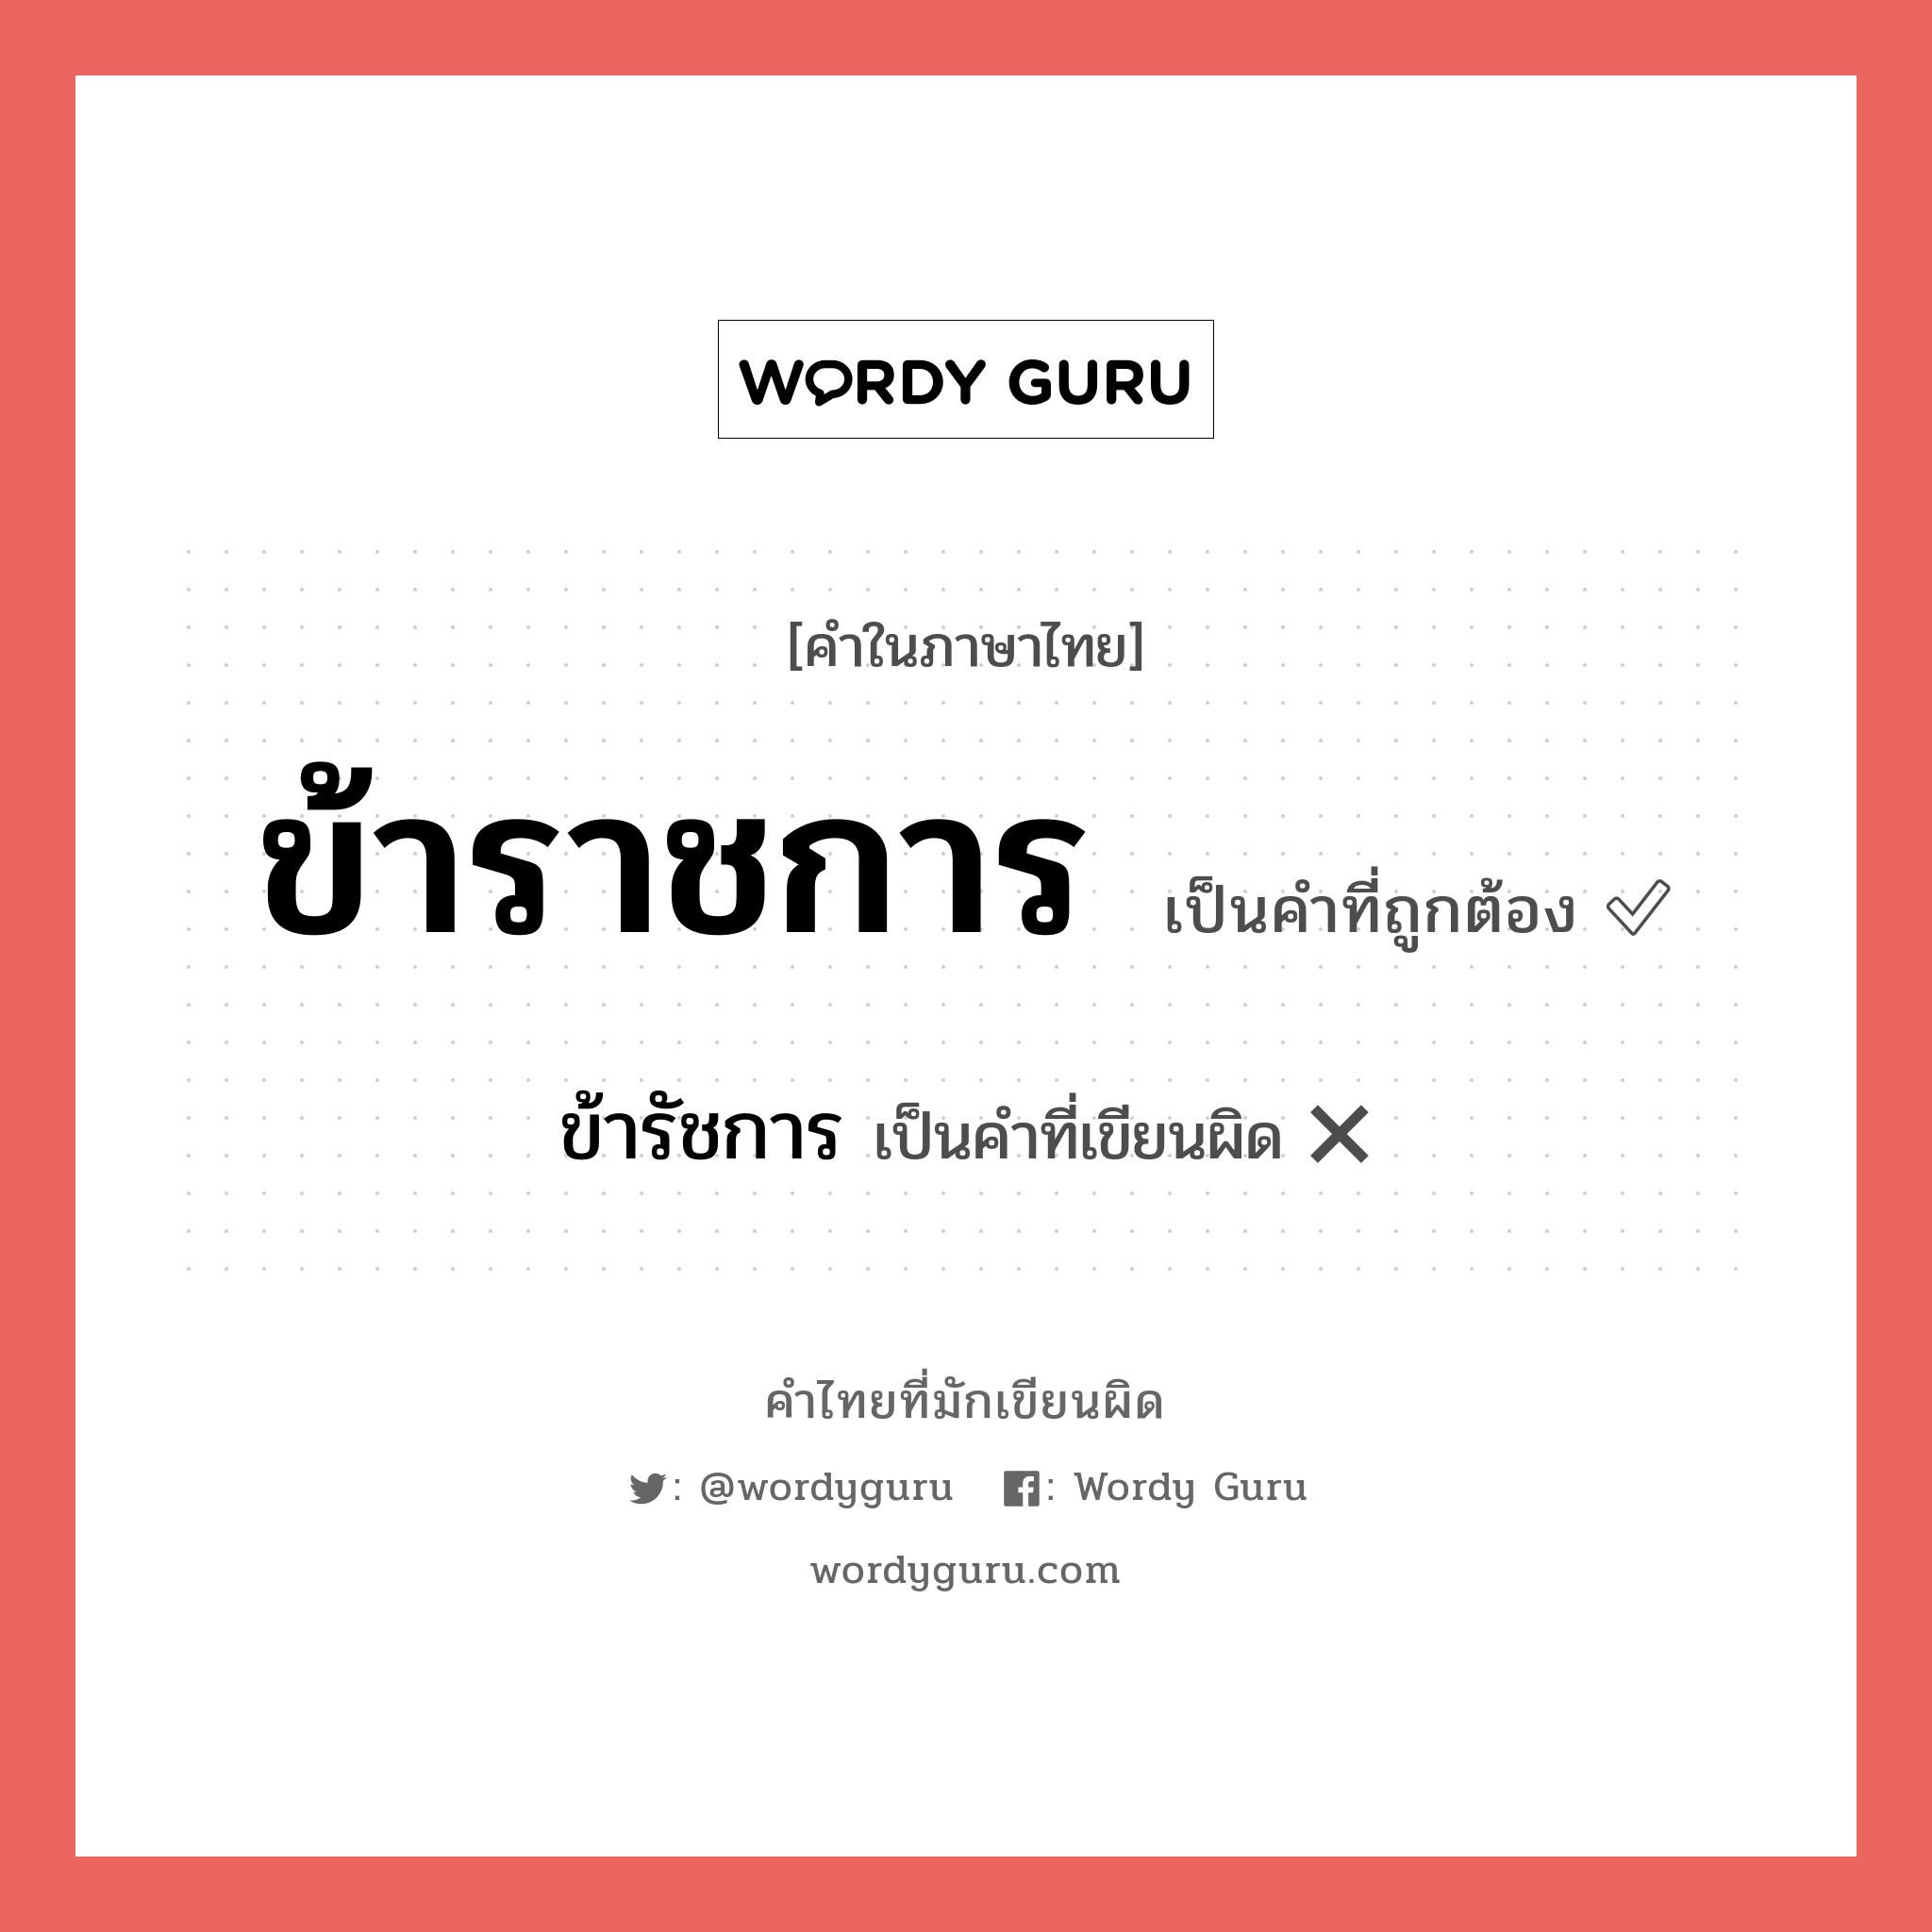 ข้าราชการ หรือ ข้าราชกาล คำไหนเขียนถูก?, คำในภาษาไทยที่มักเขียนผิด ข้าราชการ คำที่ผิด ❌ ข้ารัชการ